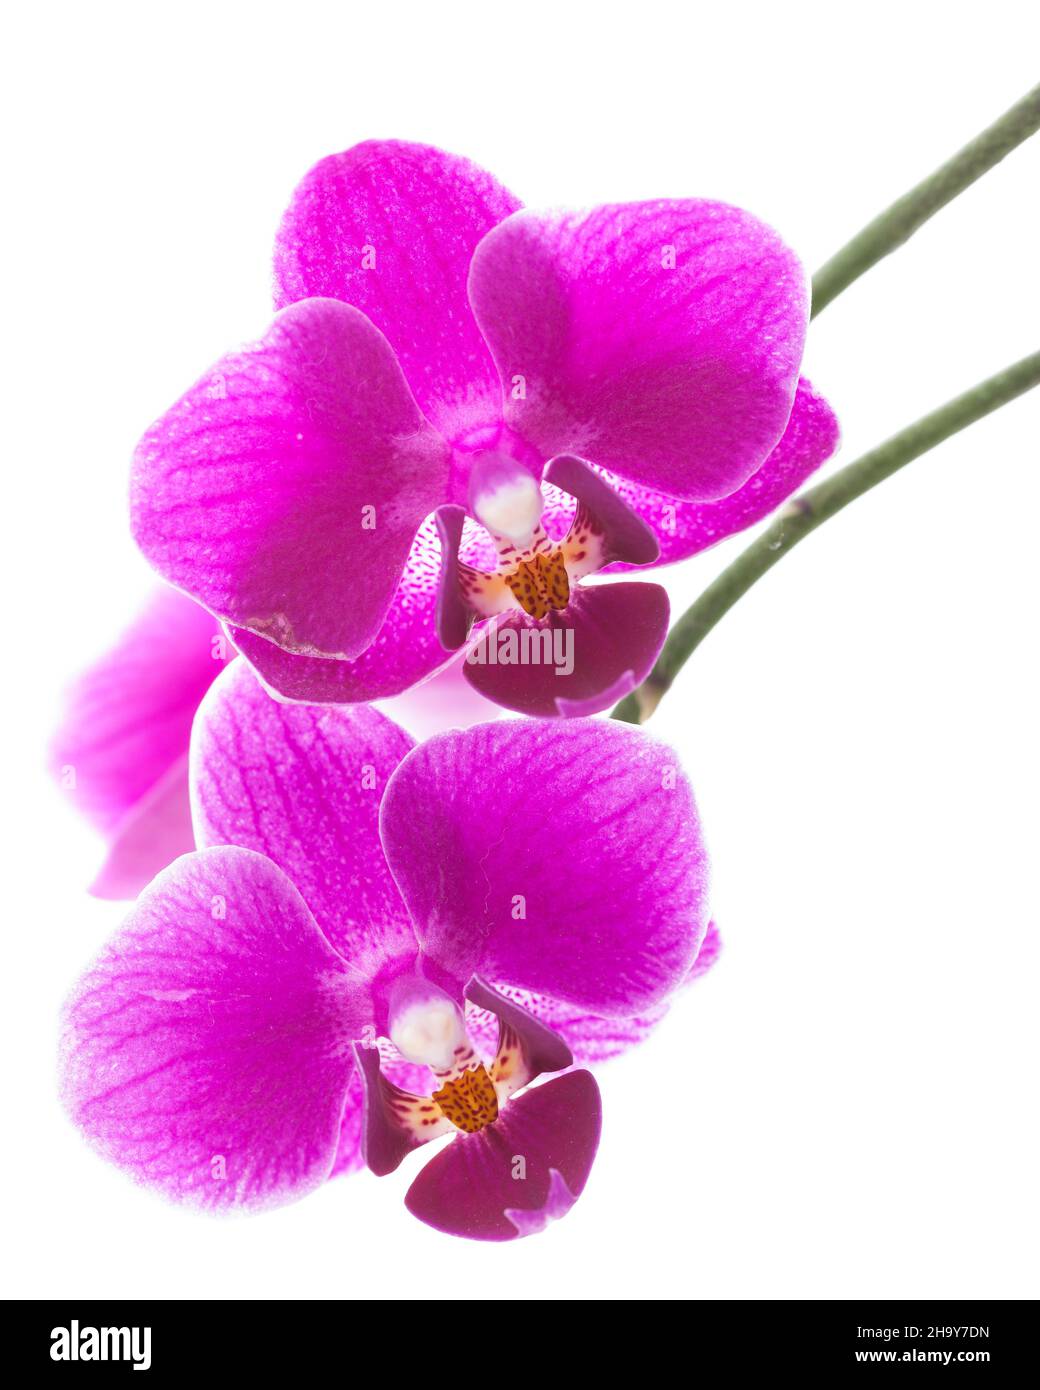 Orchidee, pals aenopsis, lila, weiß, rosa, Blume, weiß, weiß, Hintergrund, isoliert, Detail, Details isoliert, nah, Makroaufnahme, vorne, Nett, gut Stockfoto